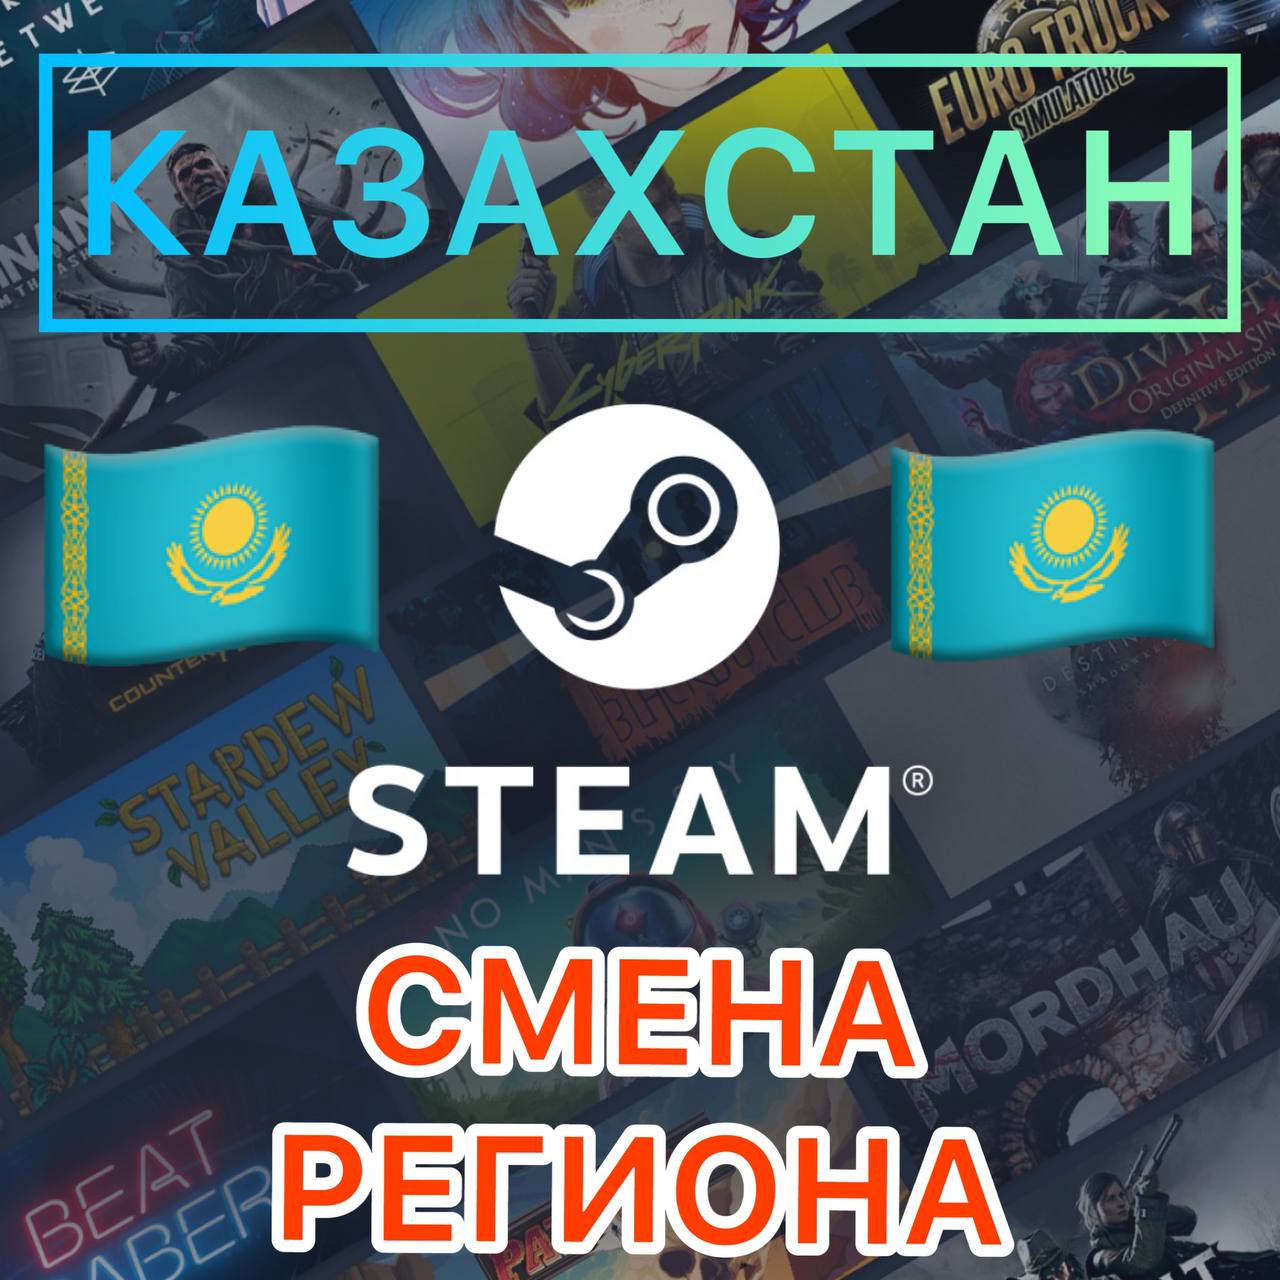 Steam казахстан киви фото 109